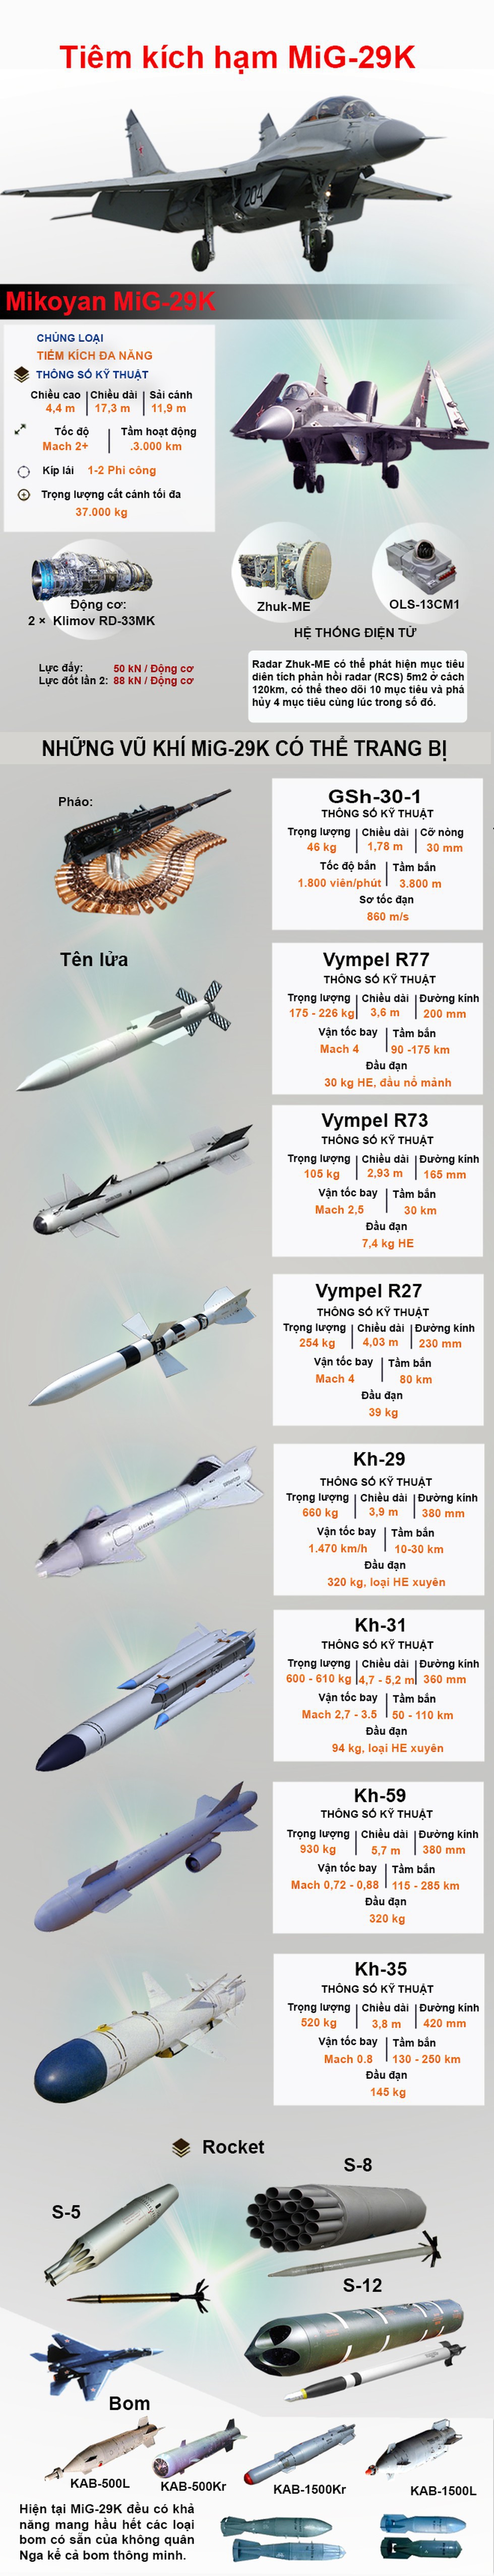 [Infographics] MiG-29K có thể được Ấn Độ sử dụng ở biên giới với Trung Quốc và Pakistan - Ảnh 1